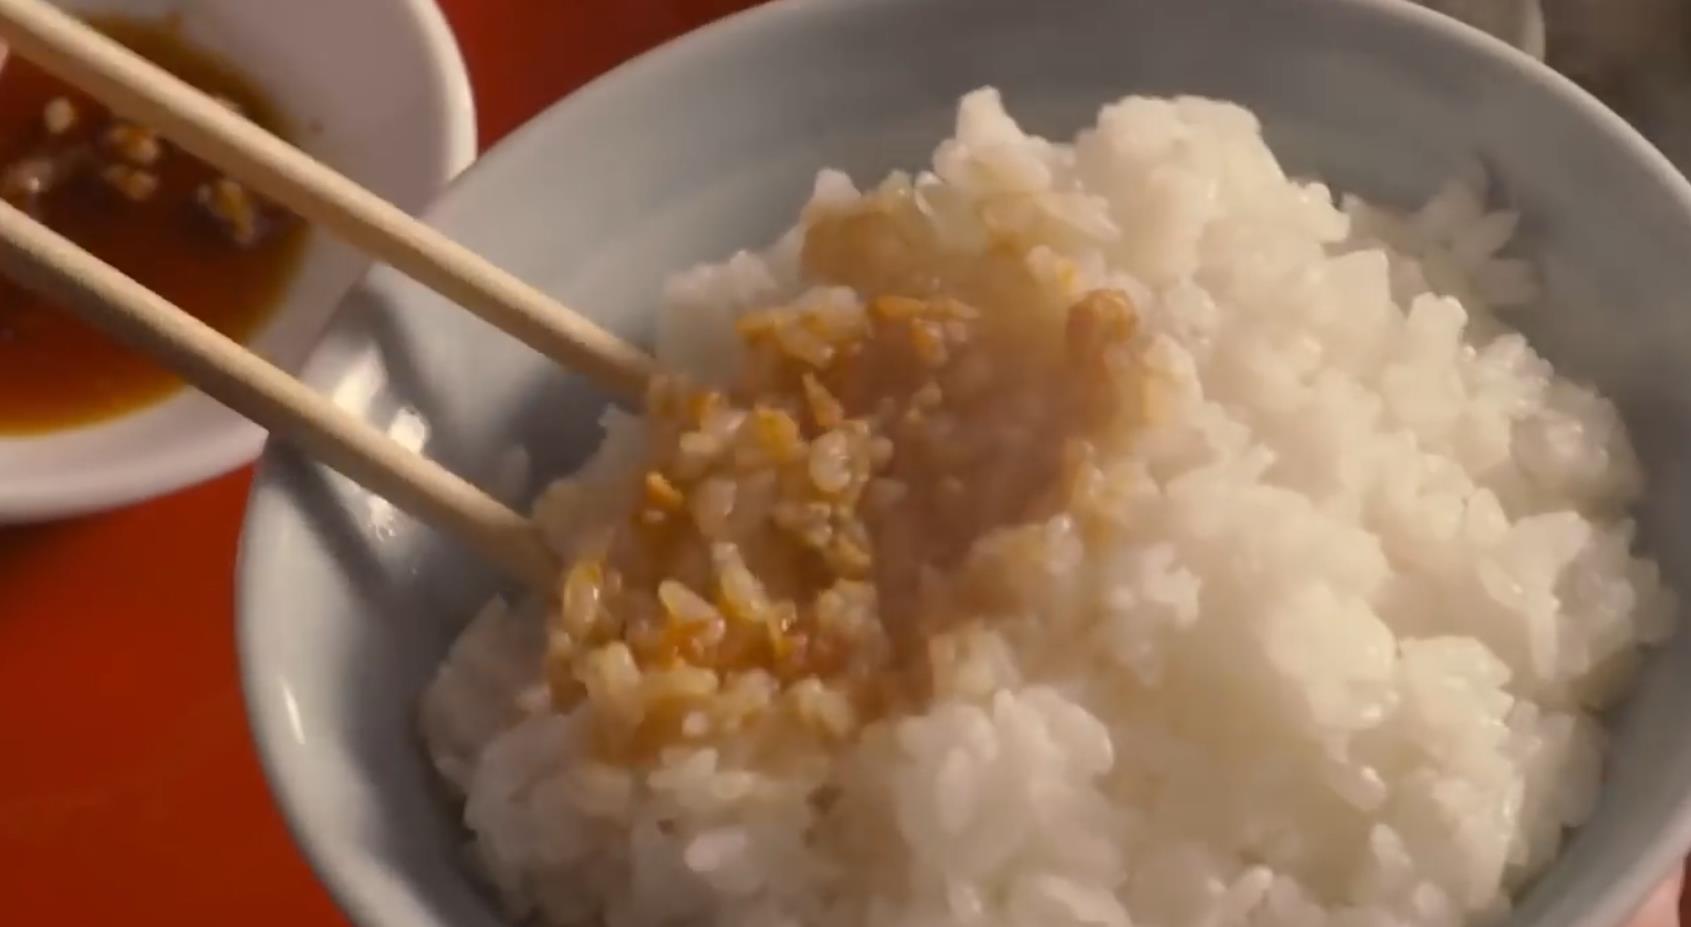 【日本】小栗旬教大家如何以最美味方法吃燒賣配白飯.mp4